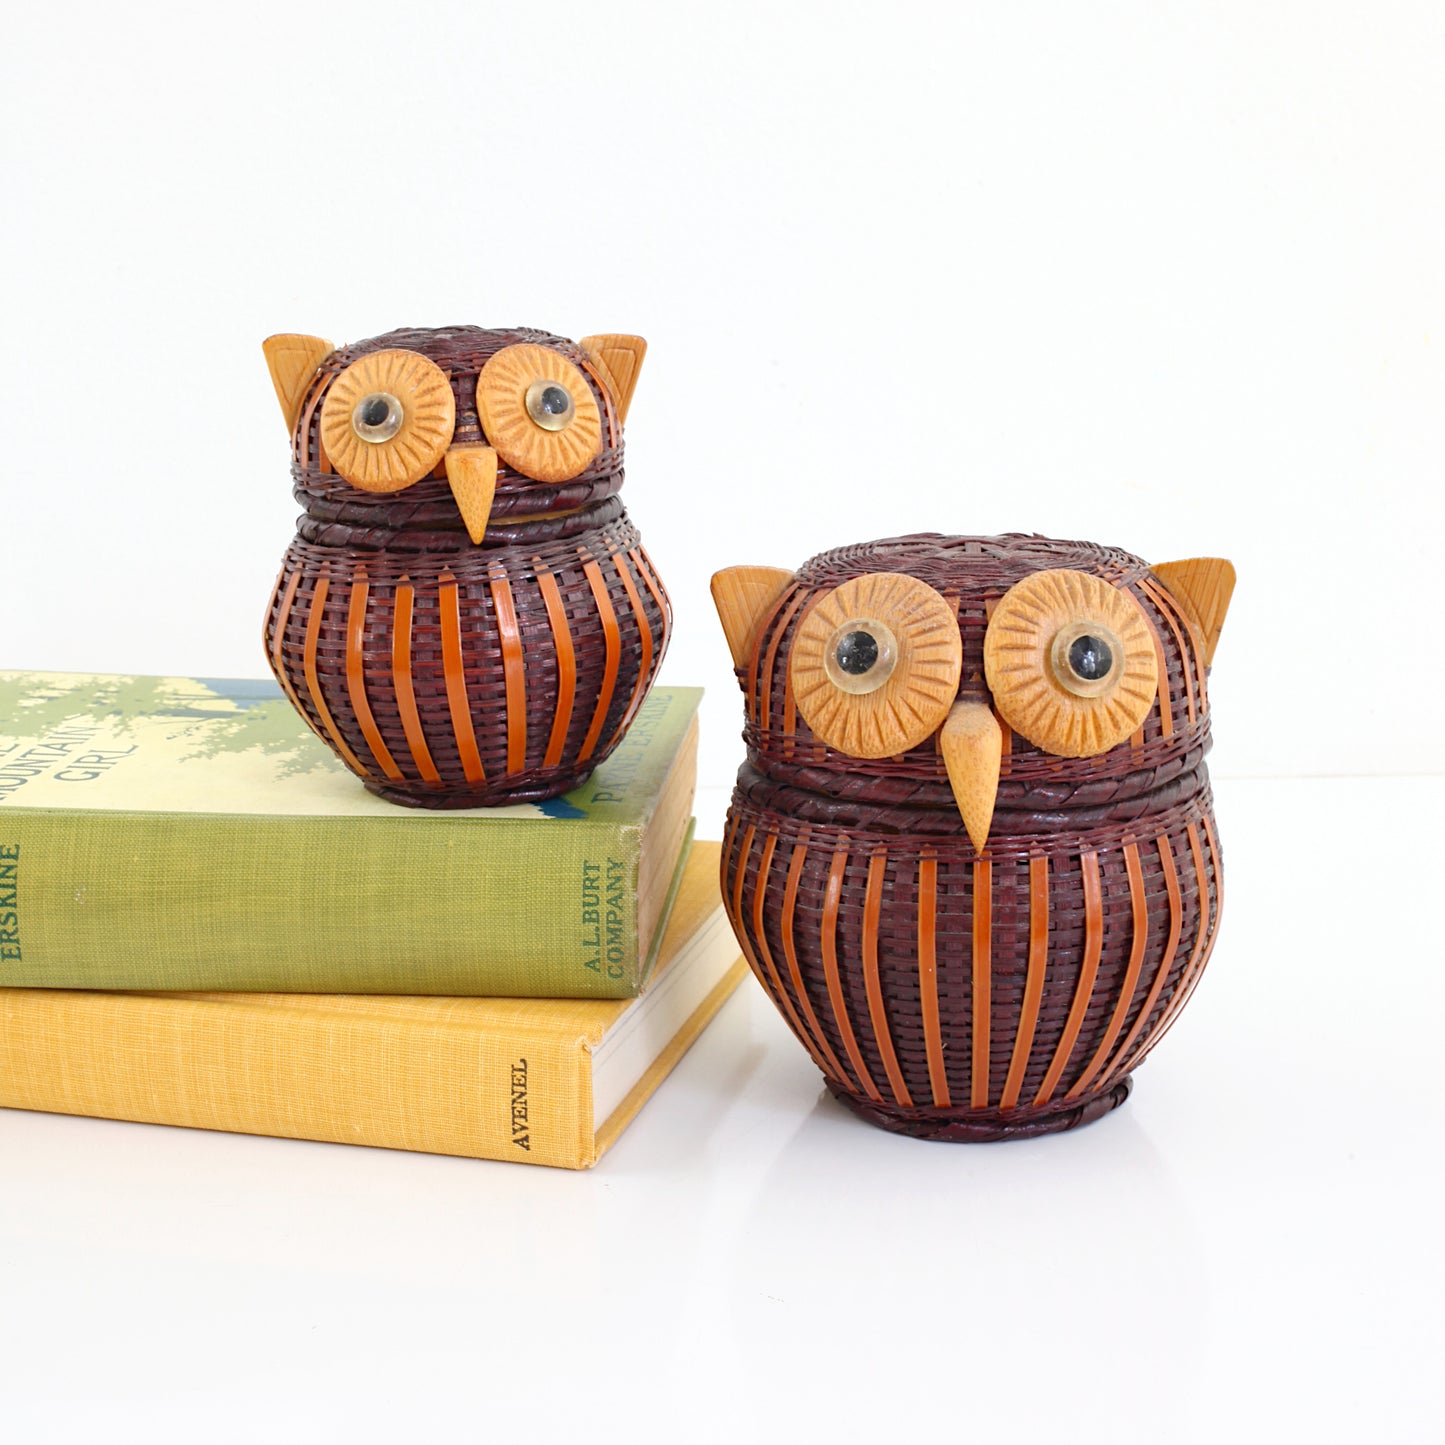 SOLD - Vintage 1970s Wicker Owl Baskets